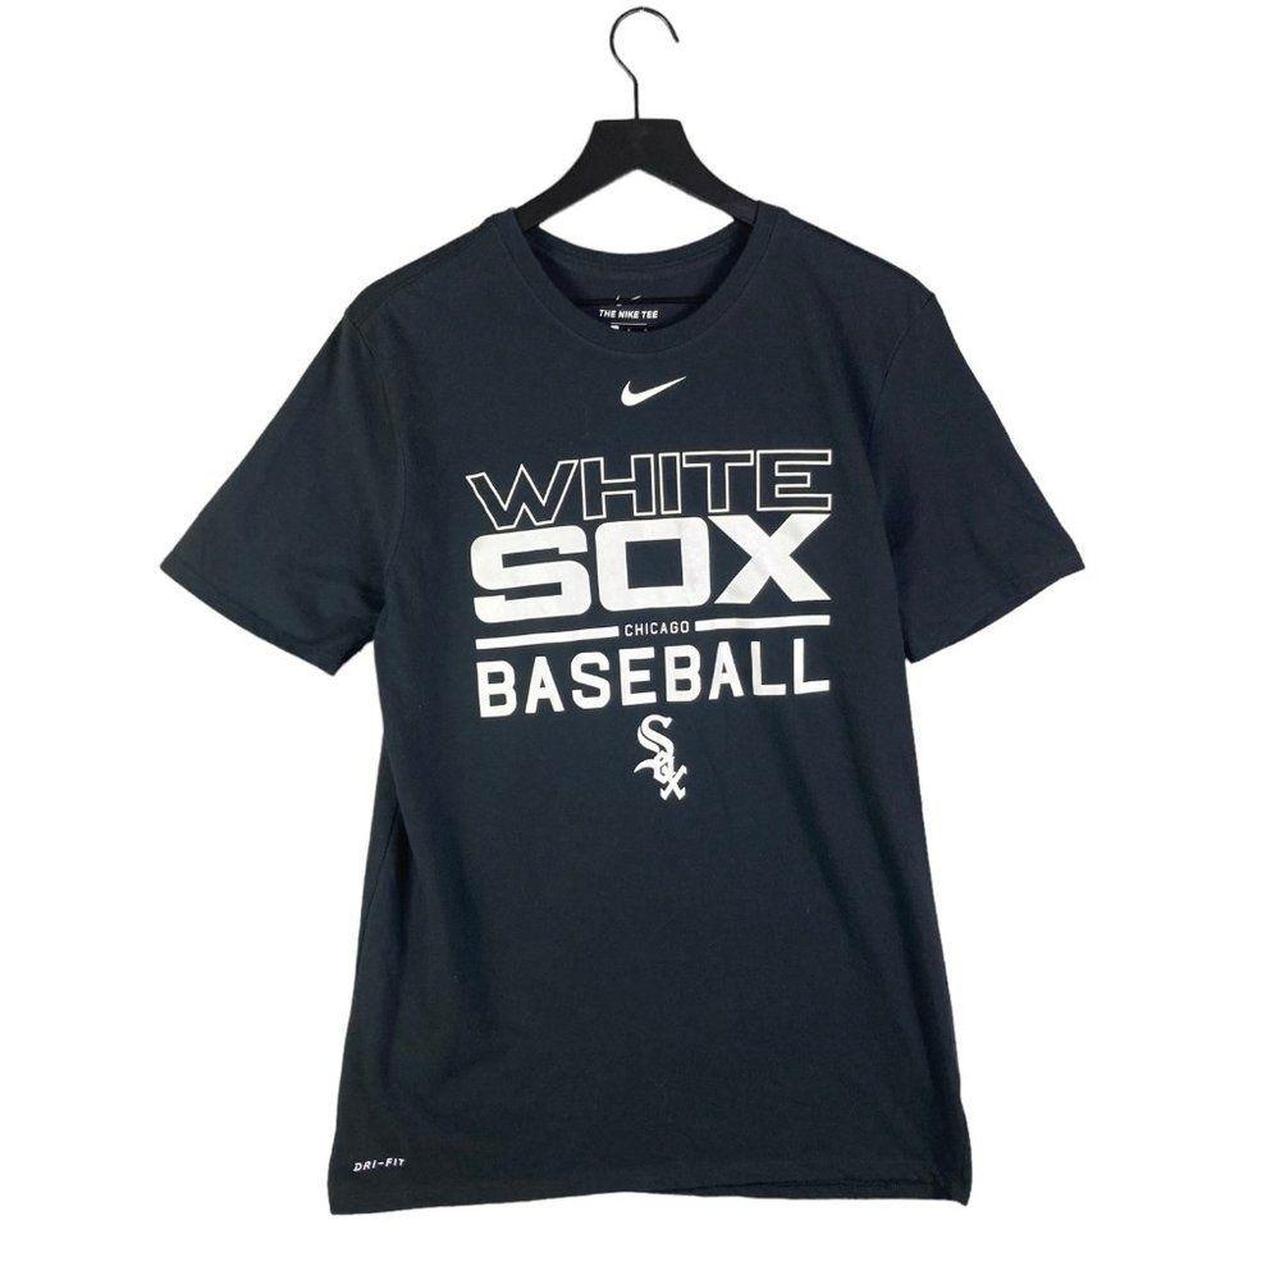 Nike Chicago White Sox Men's Short Sleeve Baseball Shirt Black